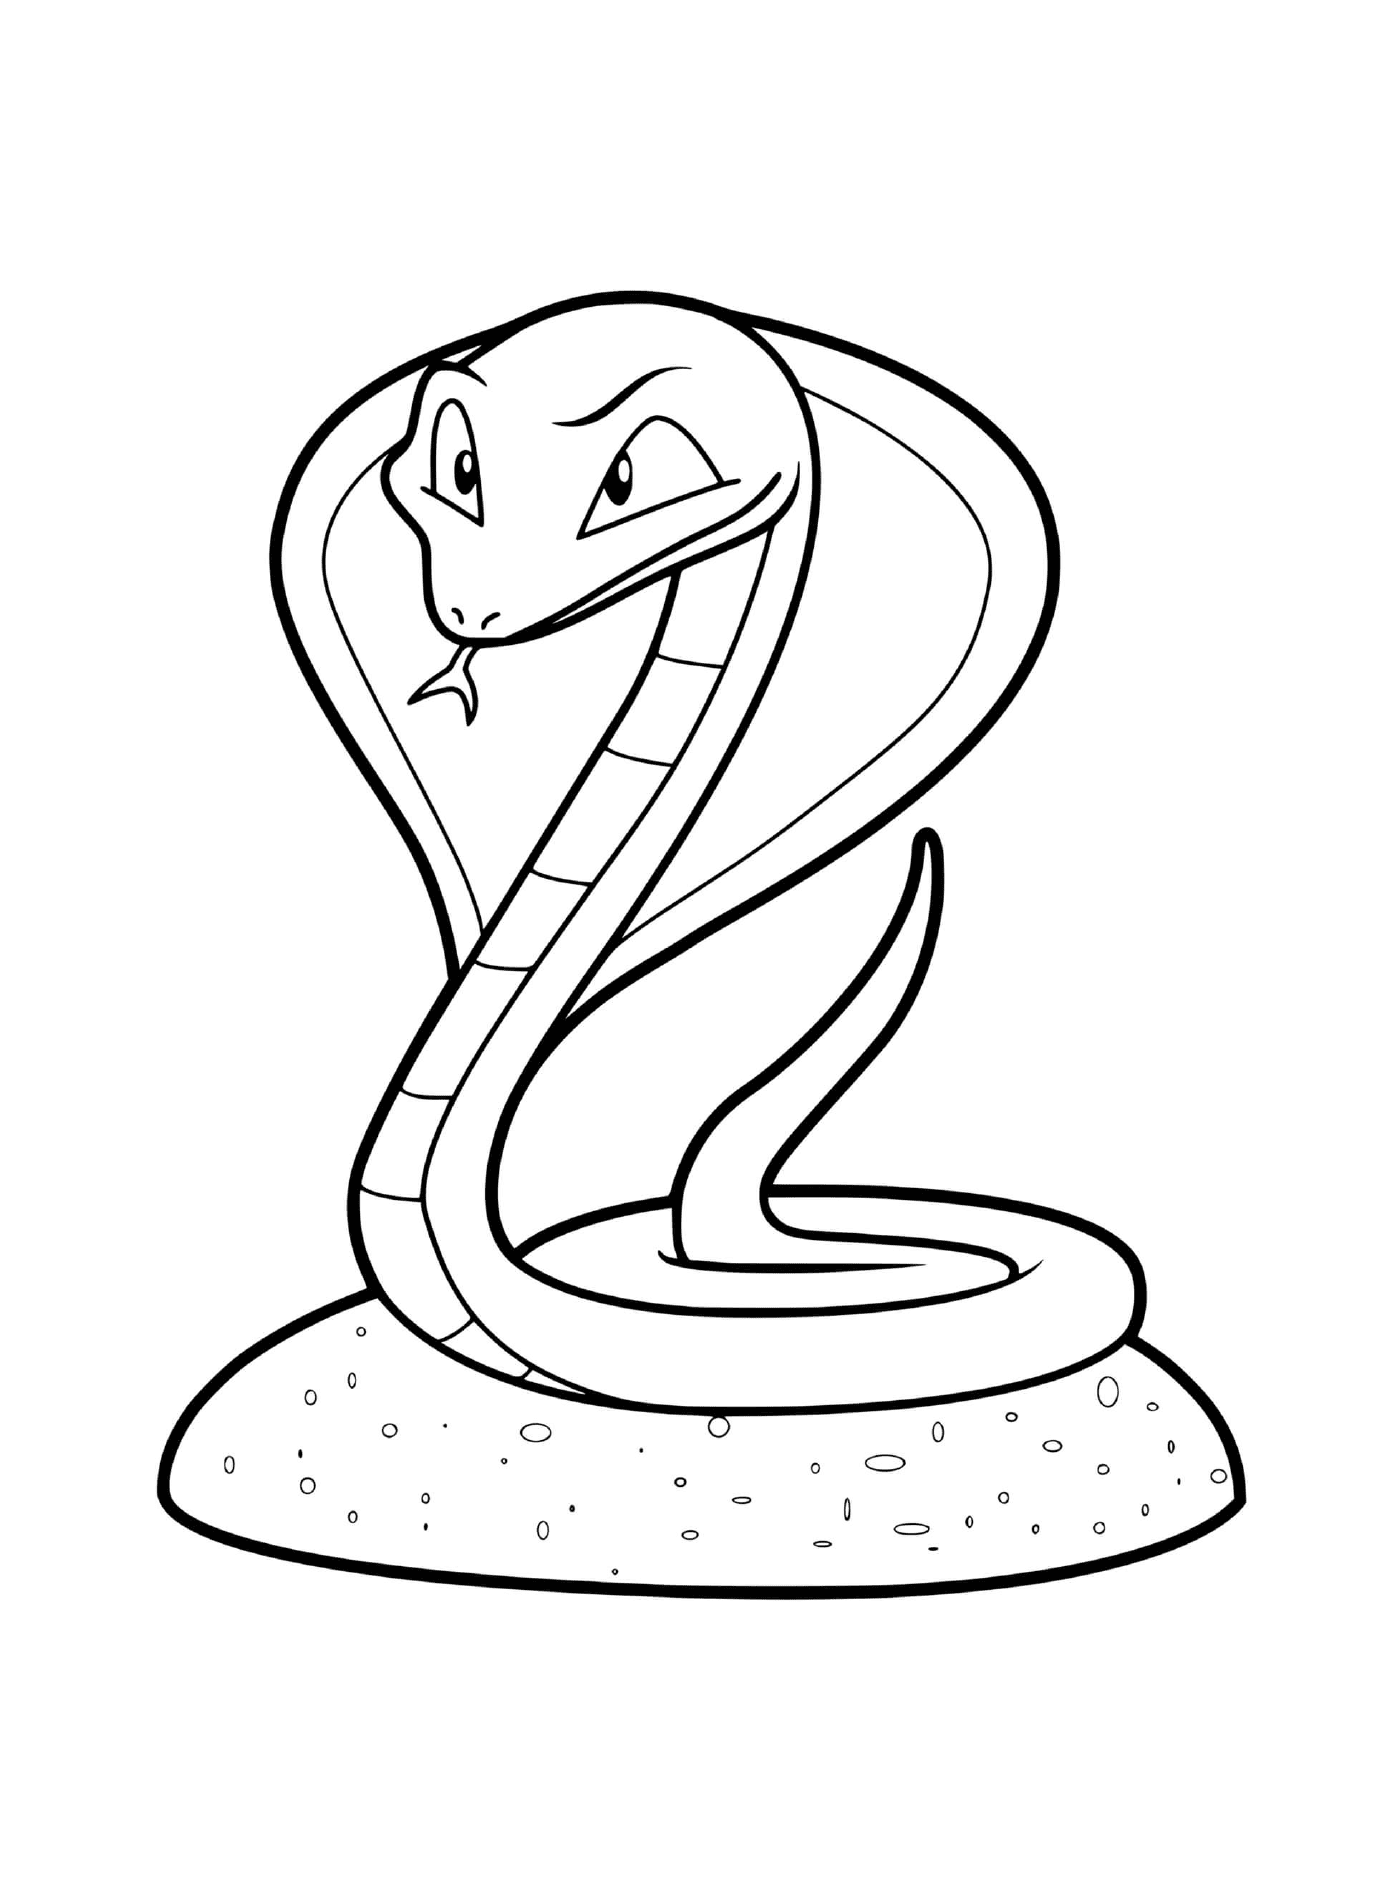  Pitón de serpiente 